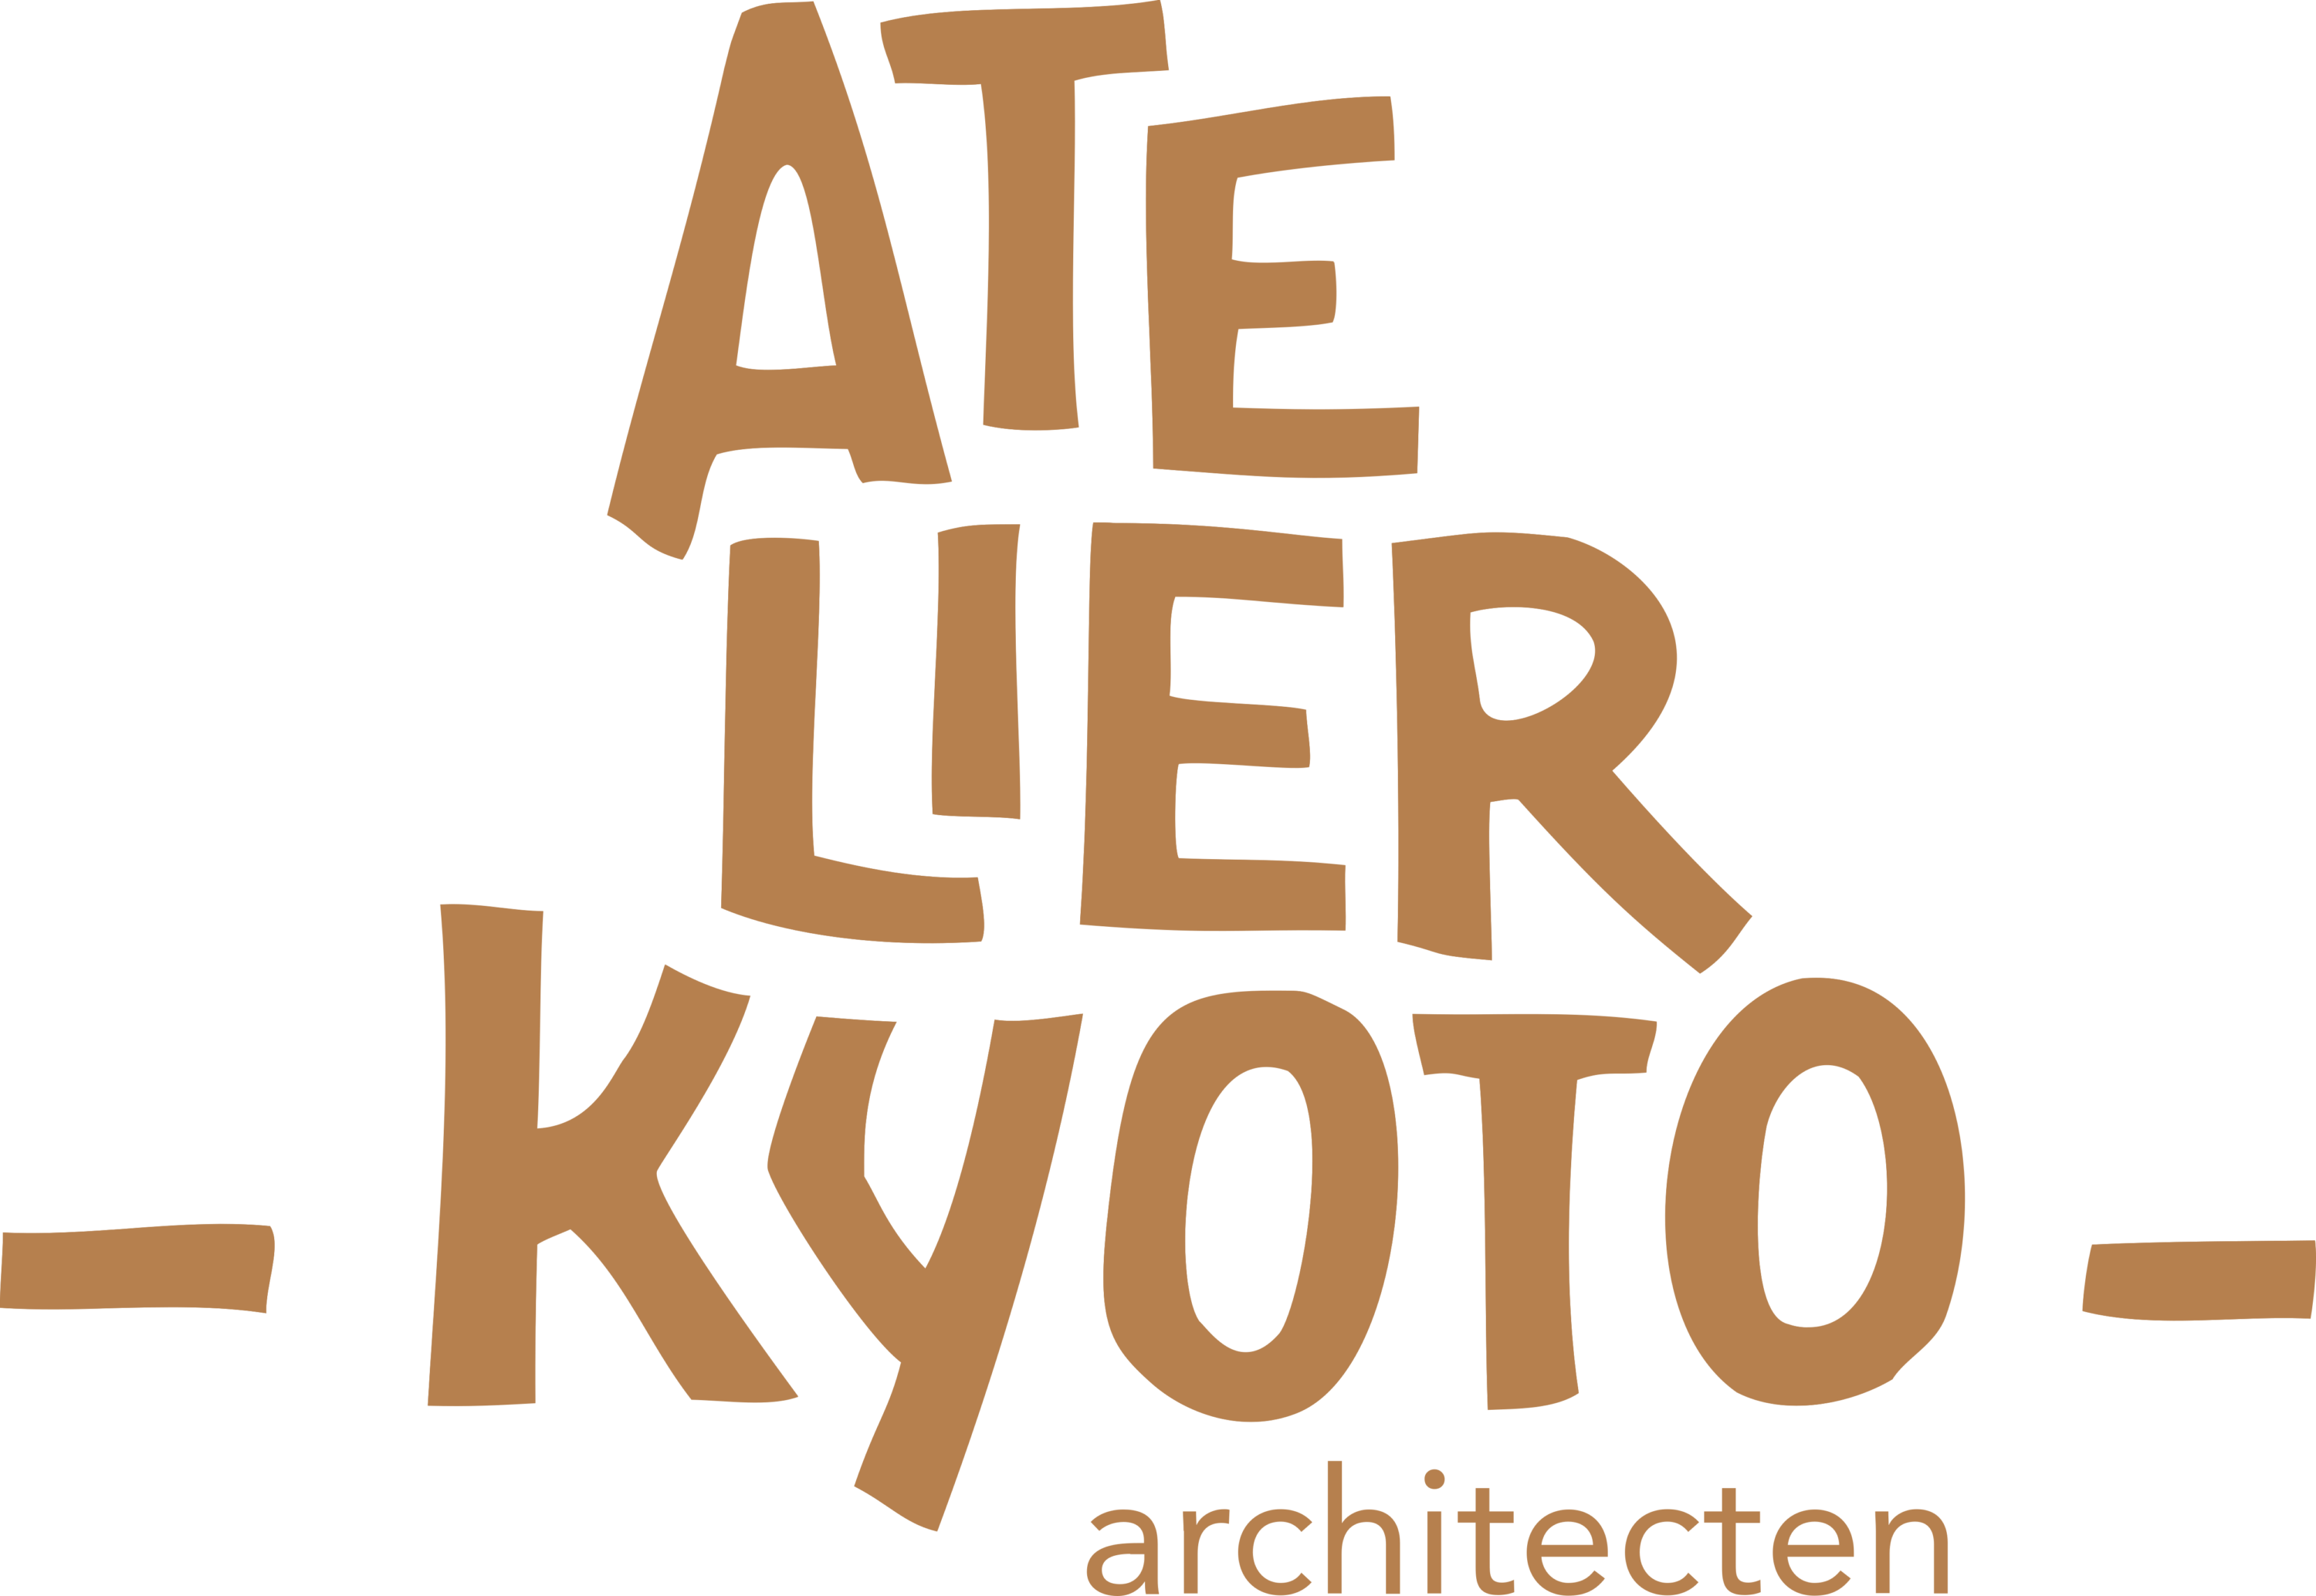 Atelier Kyoto Logo